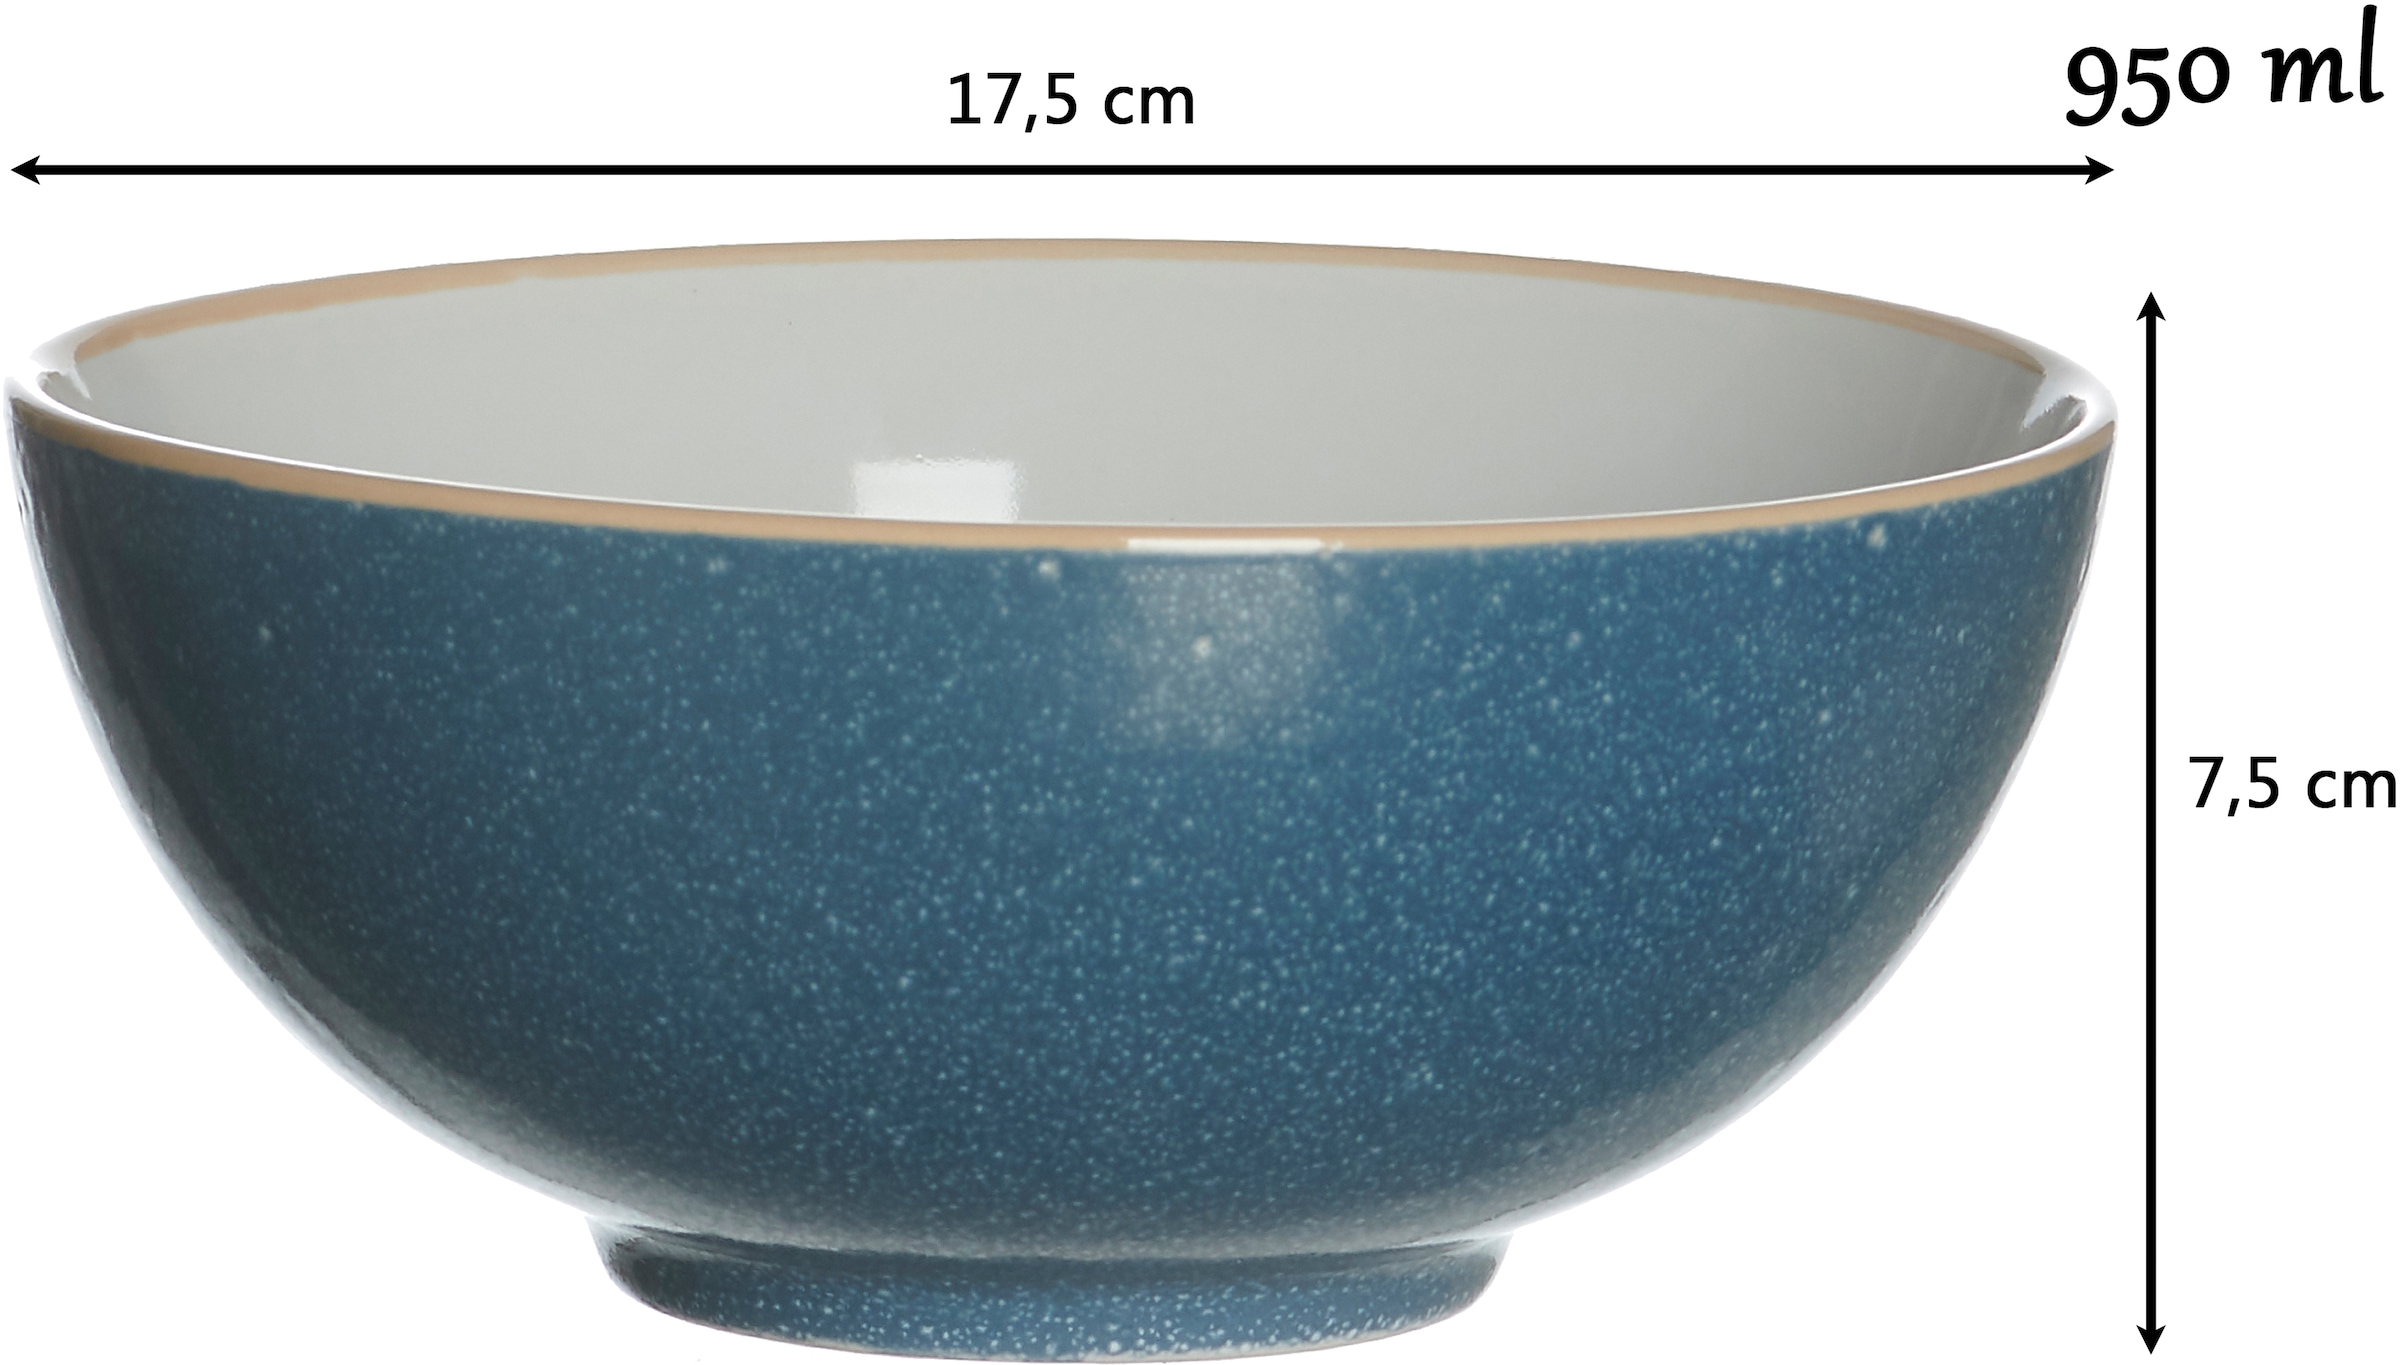 Ritzenhoff & Breker Schale »Puebla«, 2 tlg., aus Steinzeug, Buddha-Bowls, Ø 17,5 cm